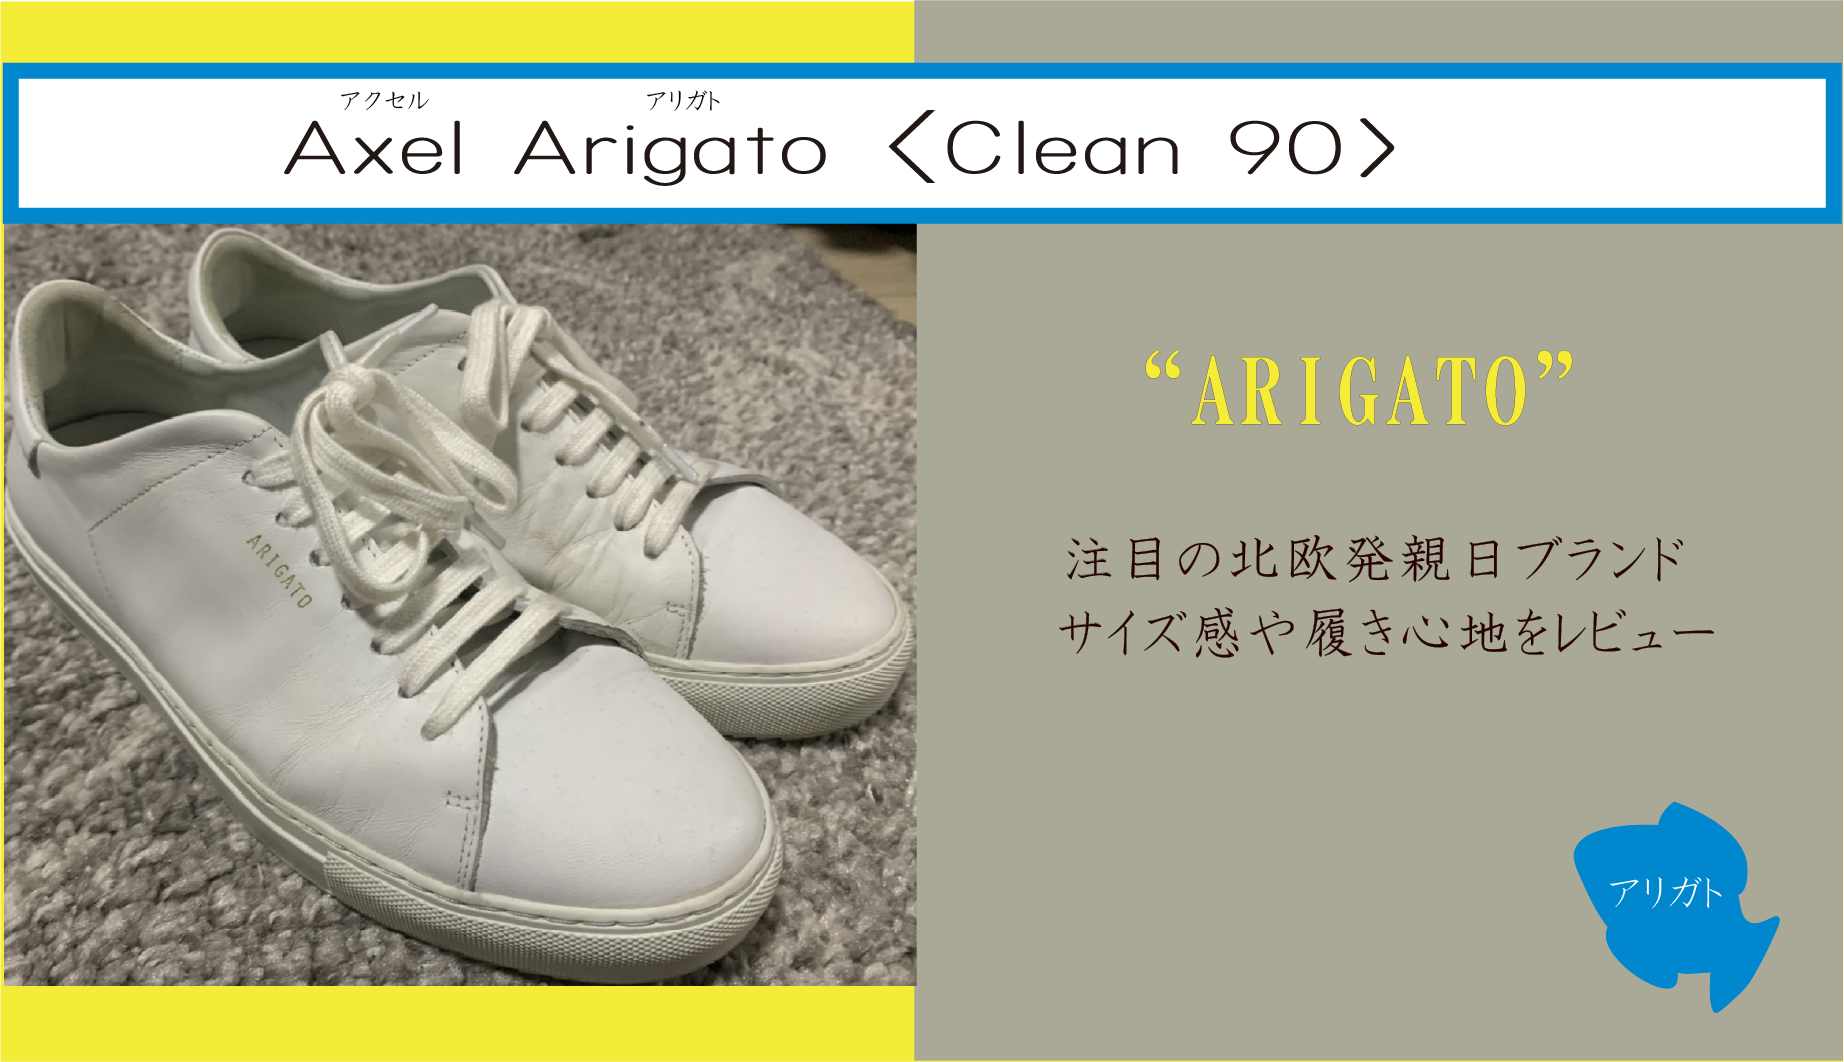 Axel Arigato - Clean 90 ブランドの特徴・サイズ感・履き心地をレビュー